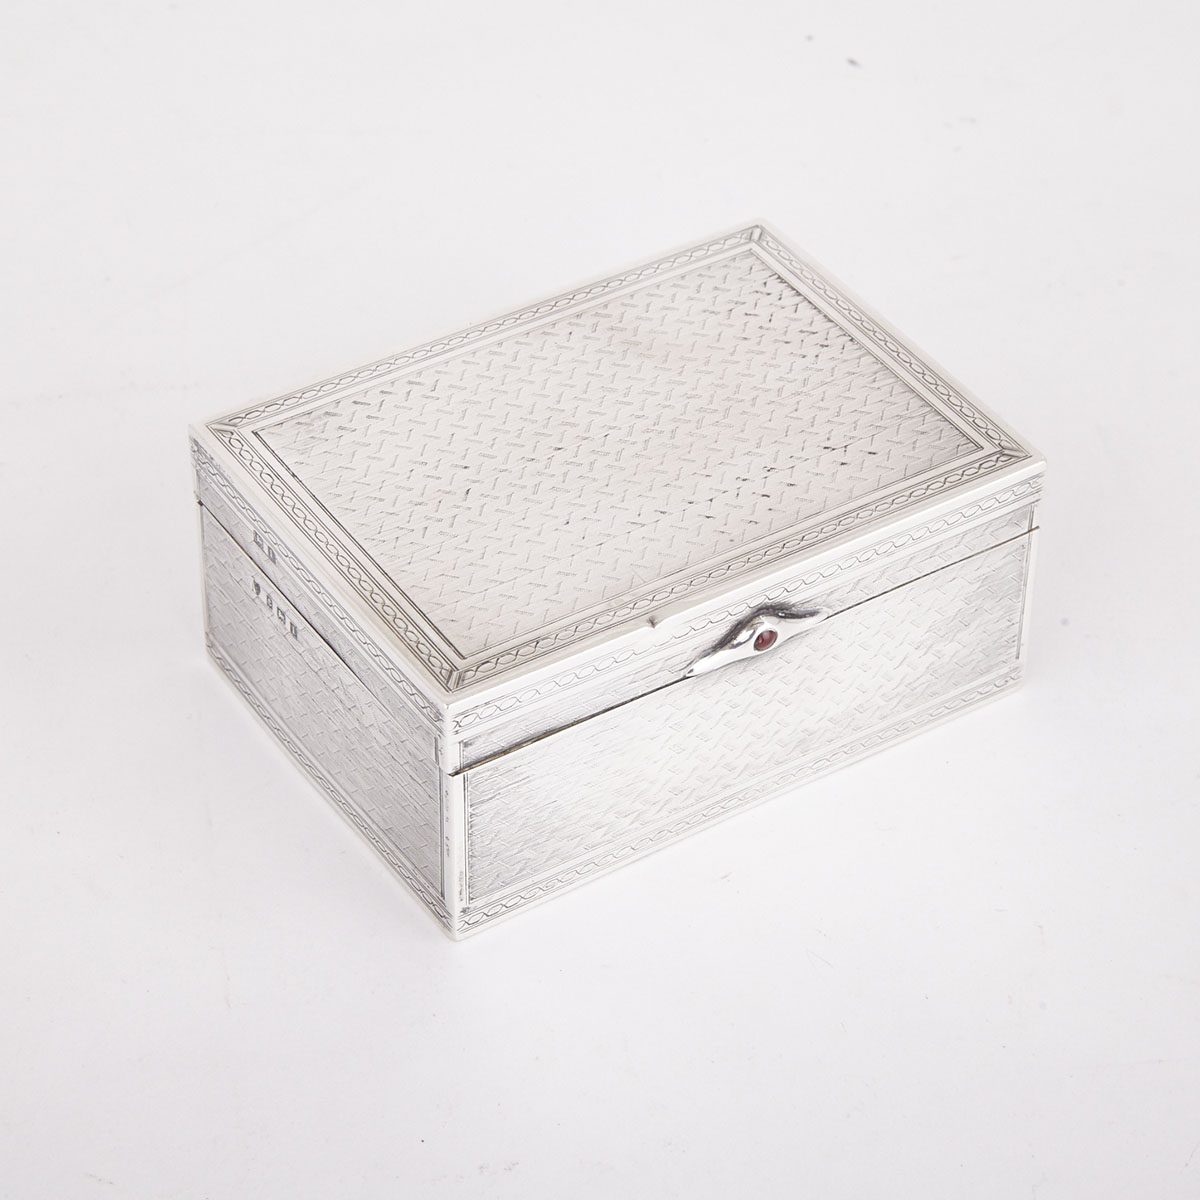 English Silver Cigarette Box, Williams Ltd., Birmingham, 1910